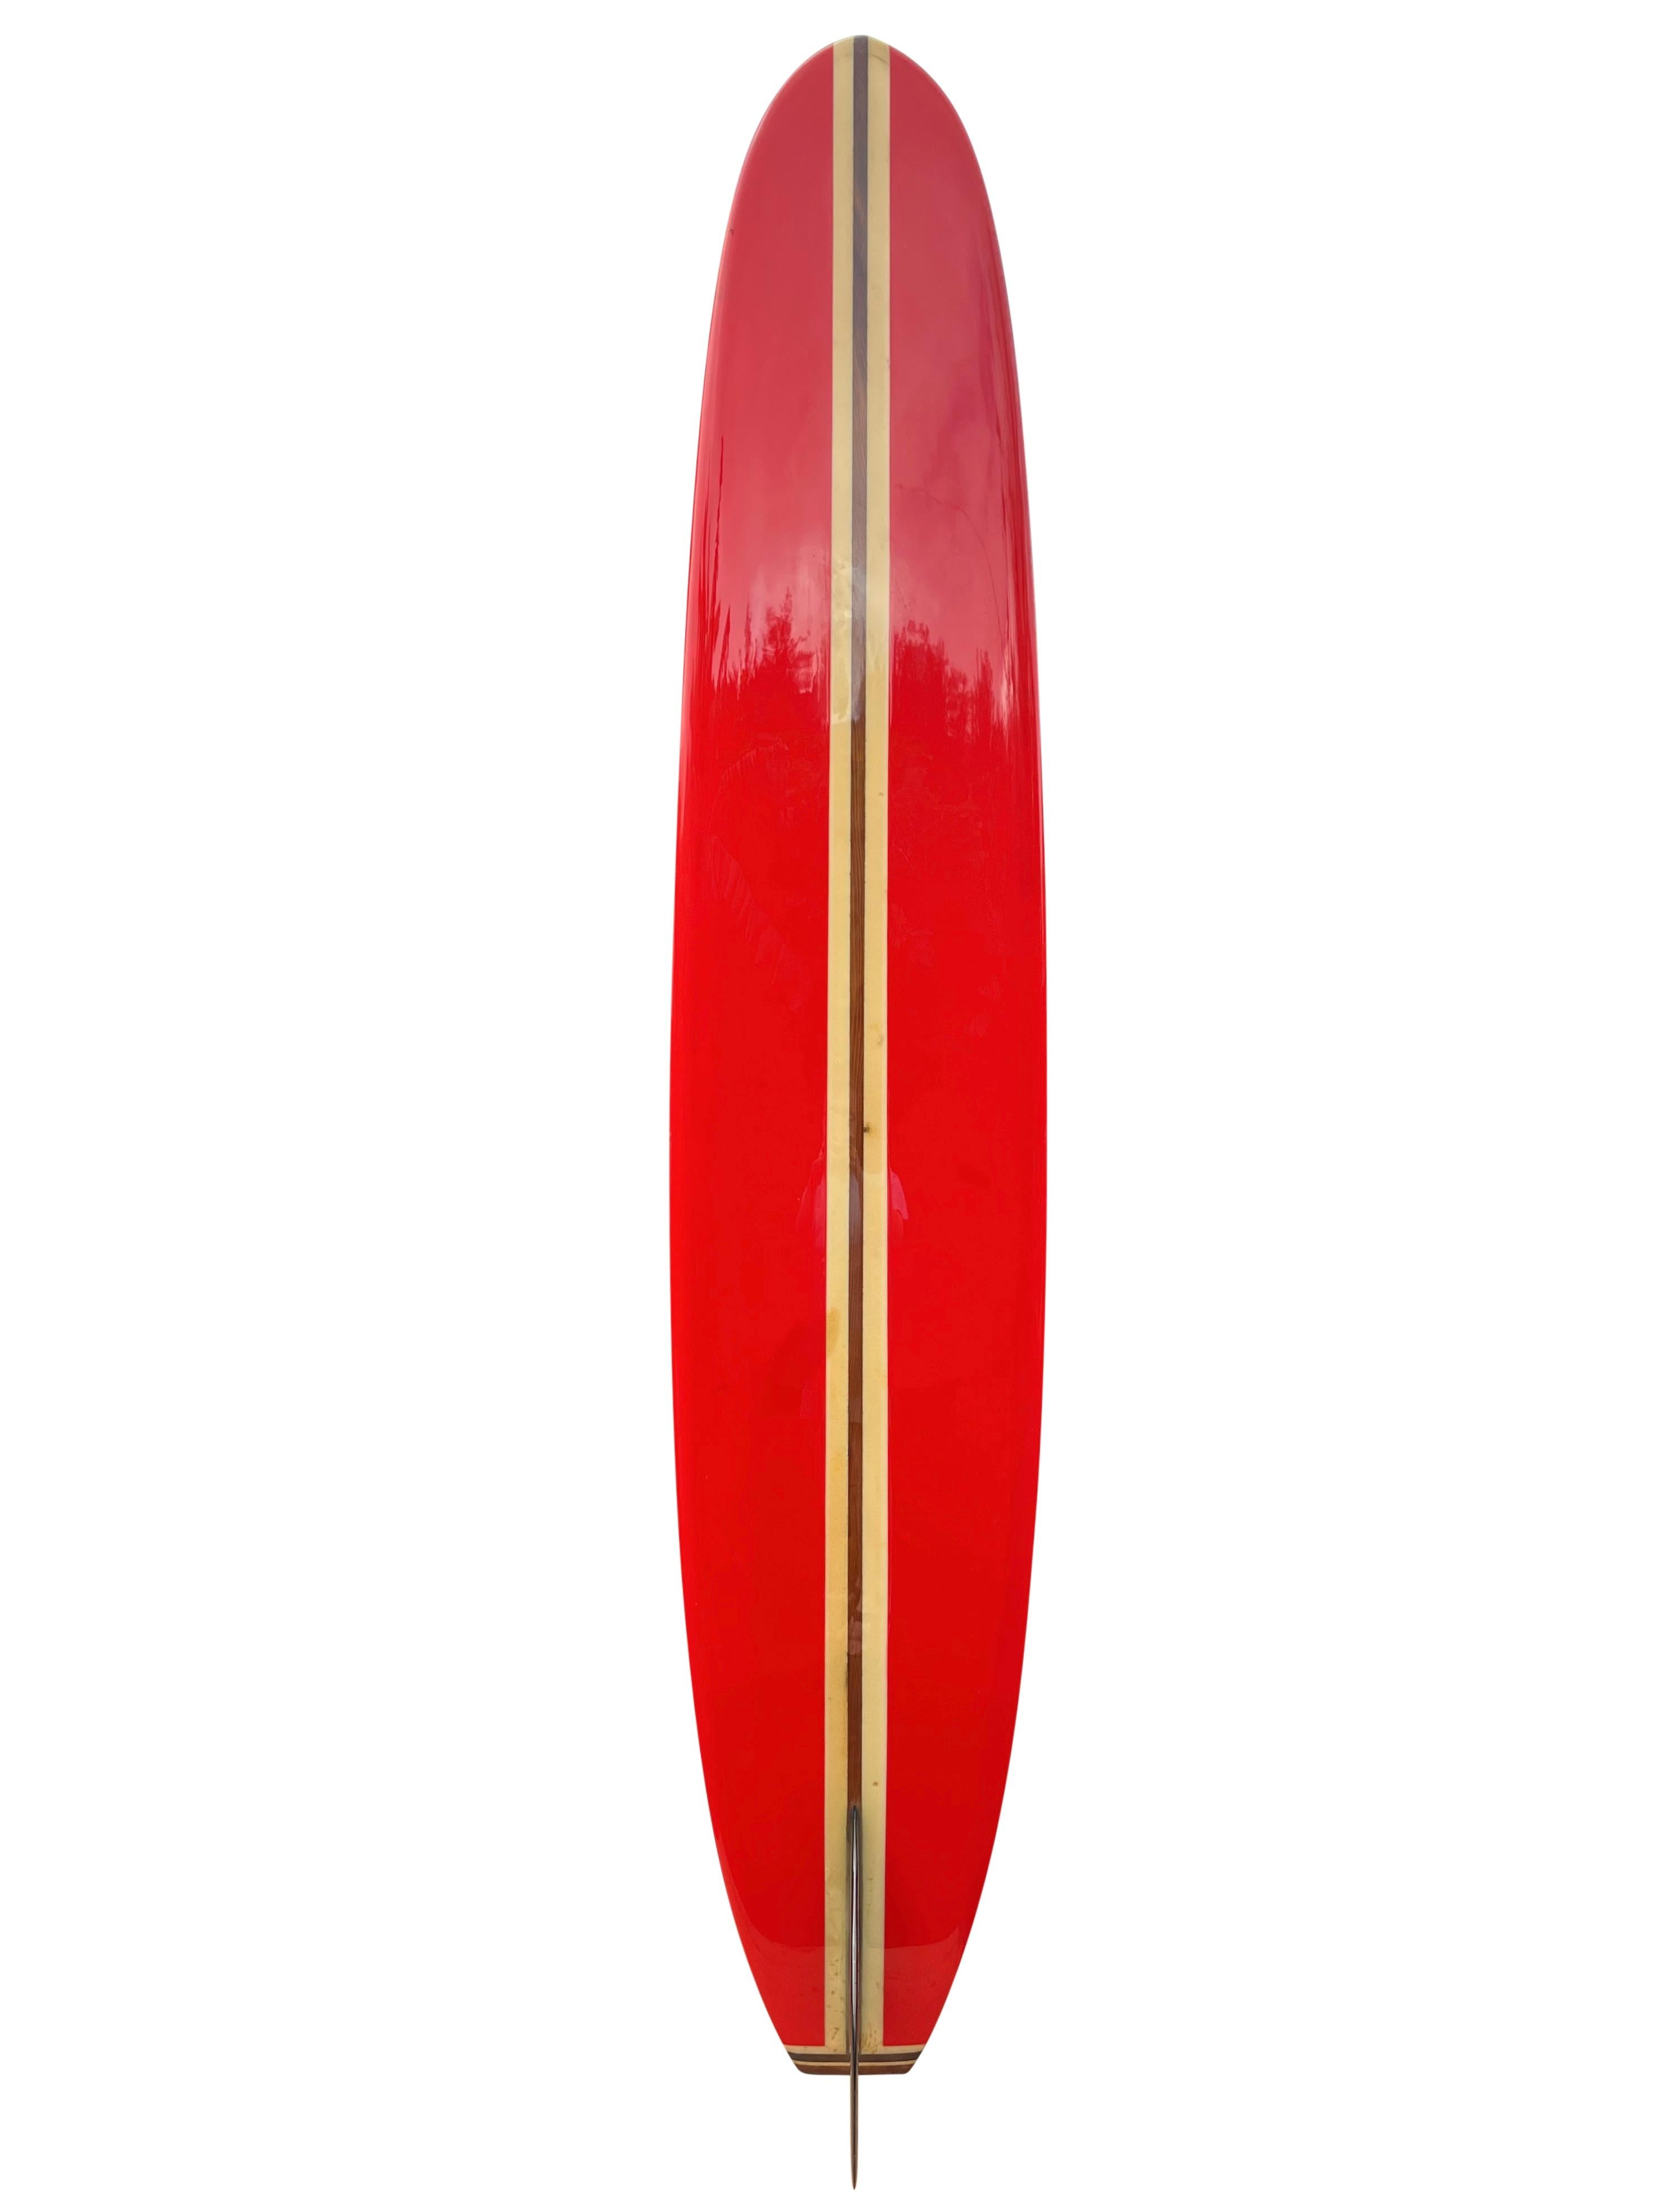 Greg Noll, Mitte der 1960er Jahre, Custom Longboard. Mit prächtigen, leuchtend roten Paneelen, Stringer aus Rotholz und dreiteiligem Holzschwanzblock. Wunderschöne, tiefschwarze Flosse mit dem charakteristischen breiten, quadratischen Schwanz. Ein